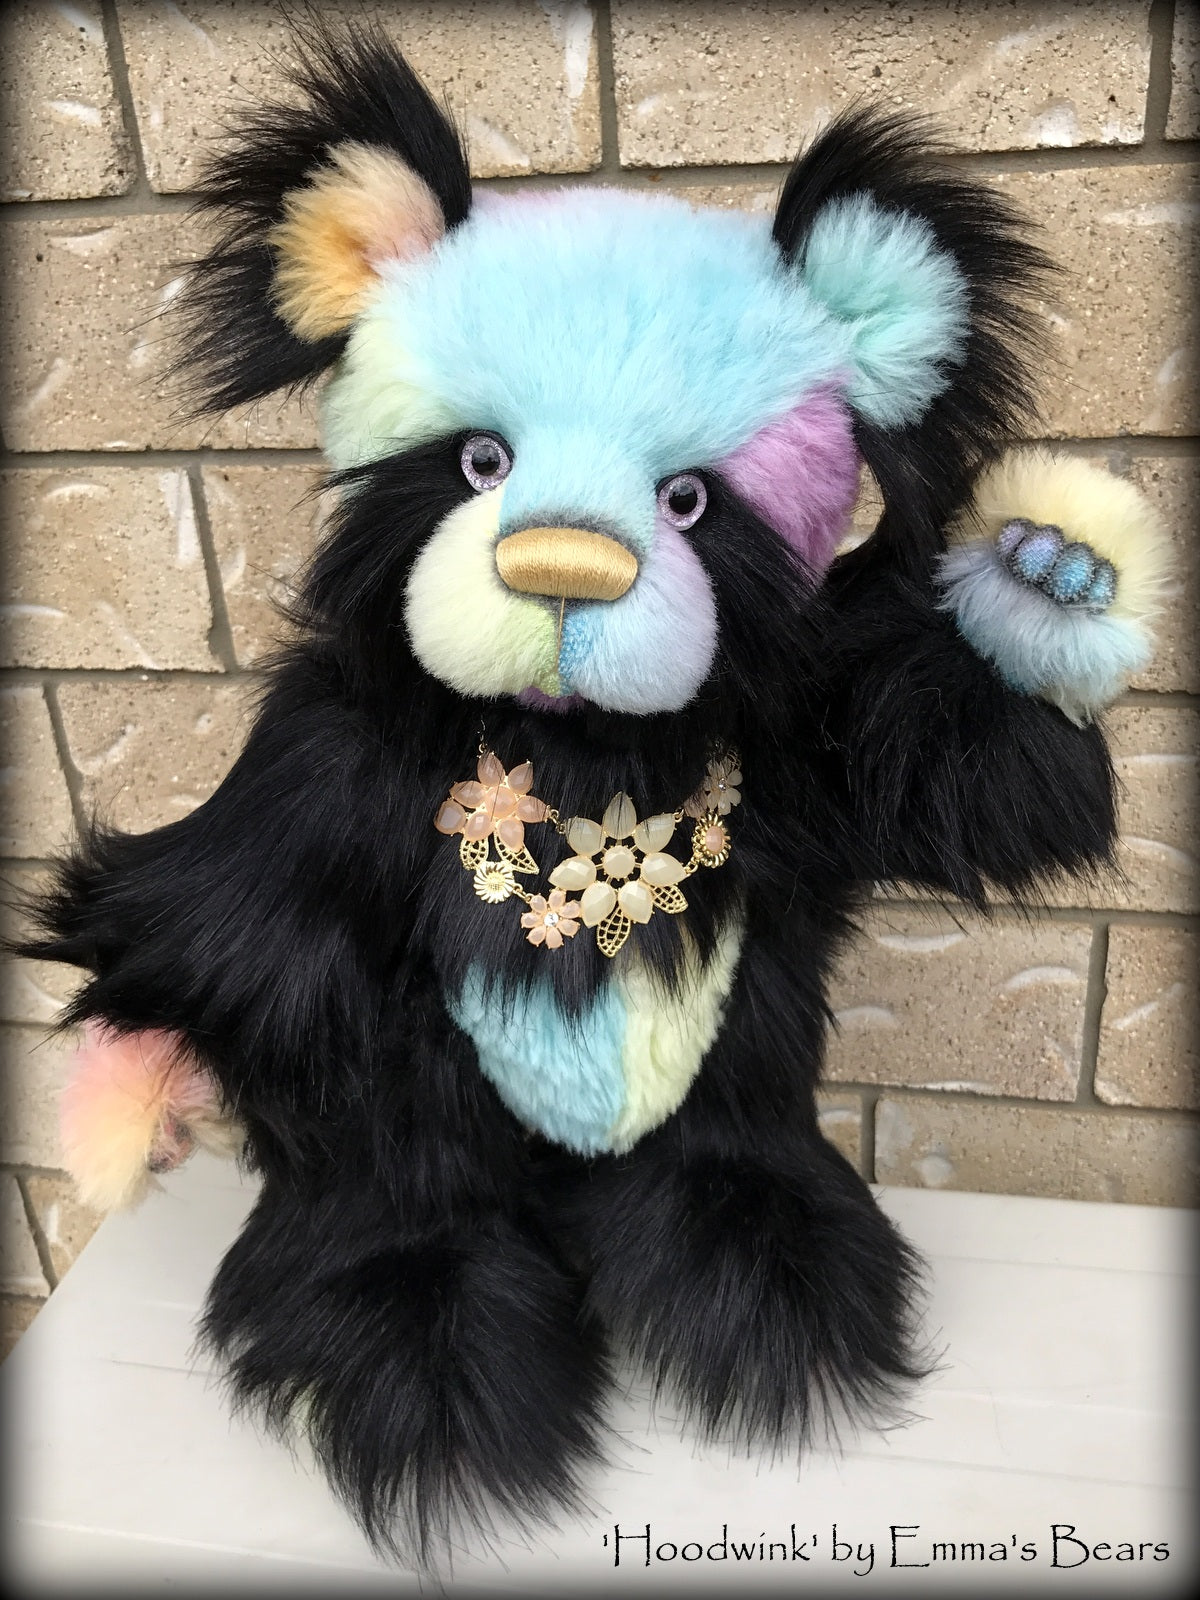 Hoodwink - 19" rainbow alpaca and faux fur artist bear by Emma's Bears  - OOAK